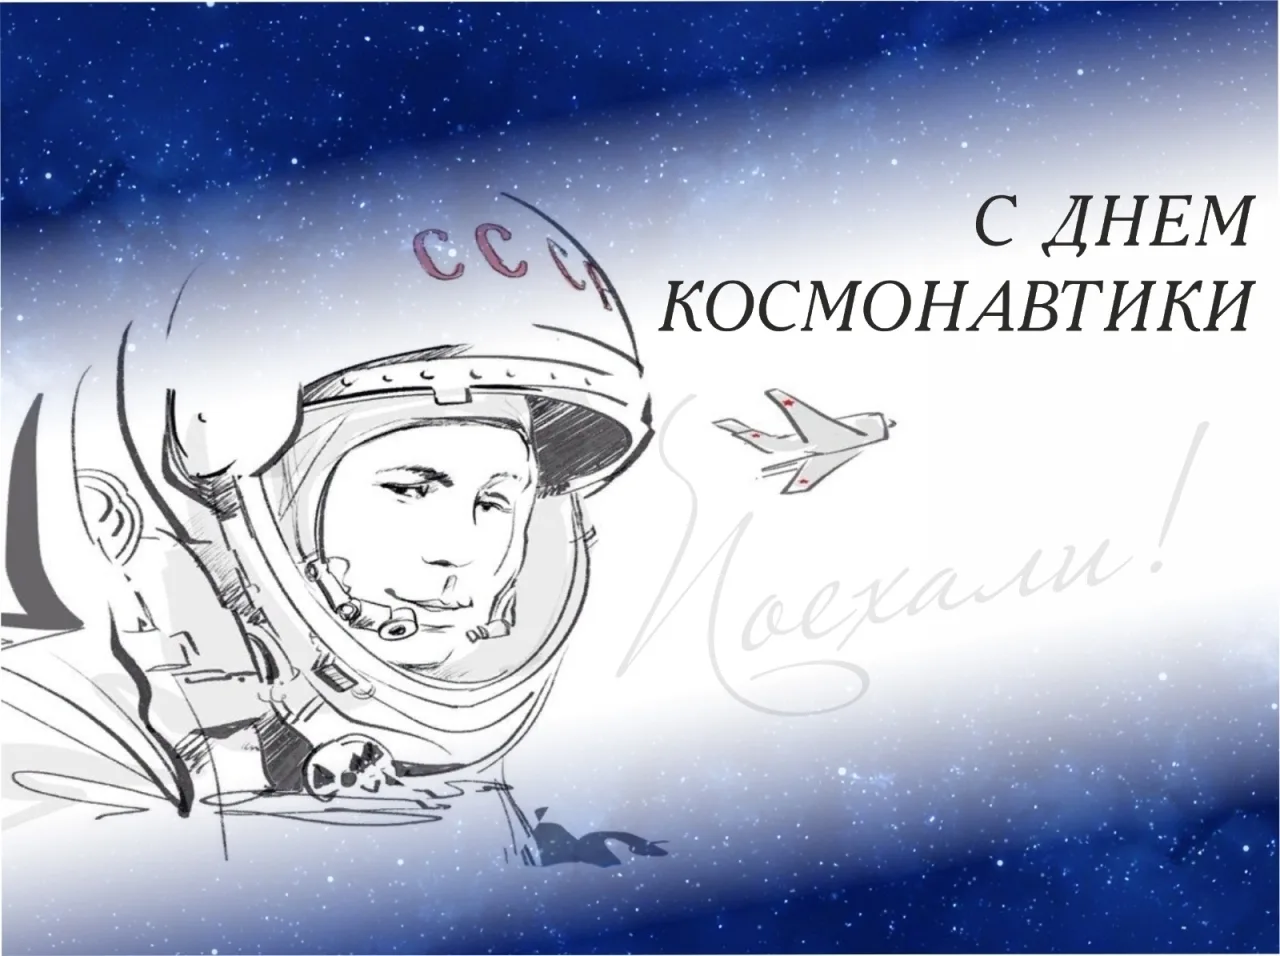 Фото Cosmonautics Day poem for children #5